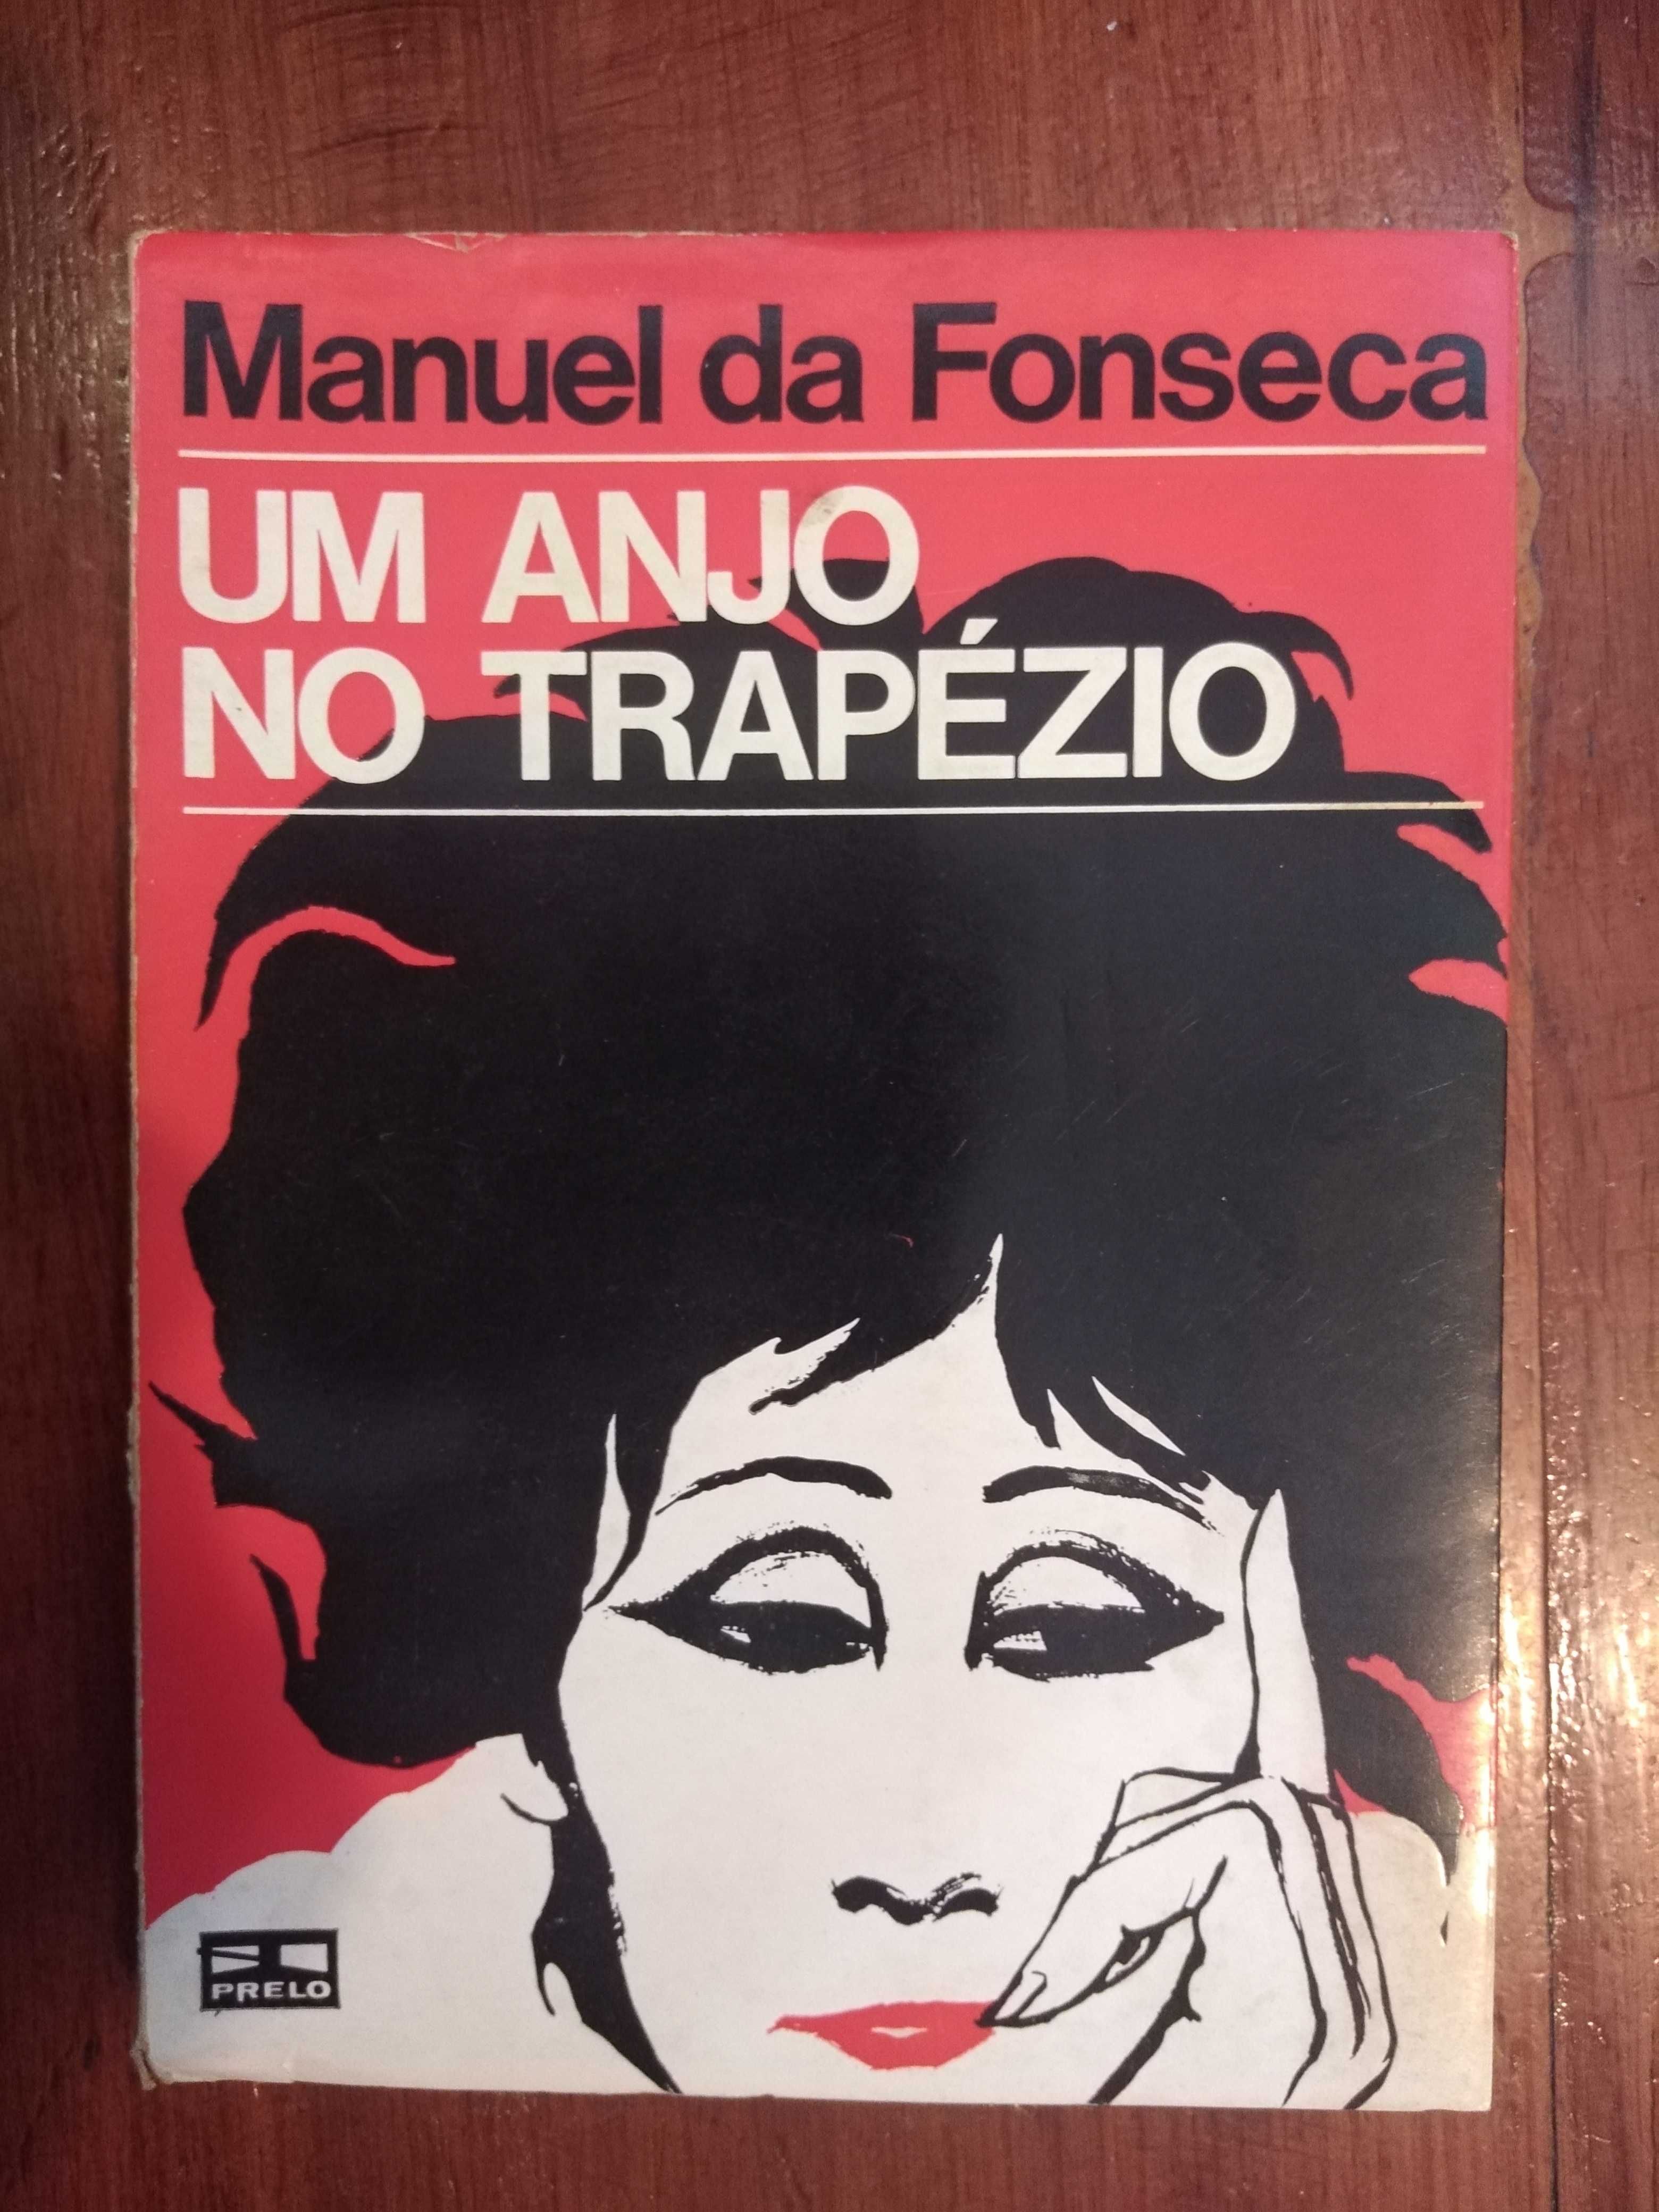 Manuel da Fonseca - Um anjo no trapézio [1.ª ed.]